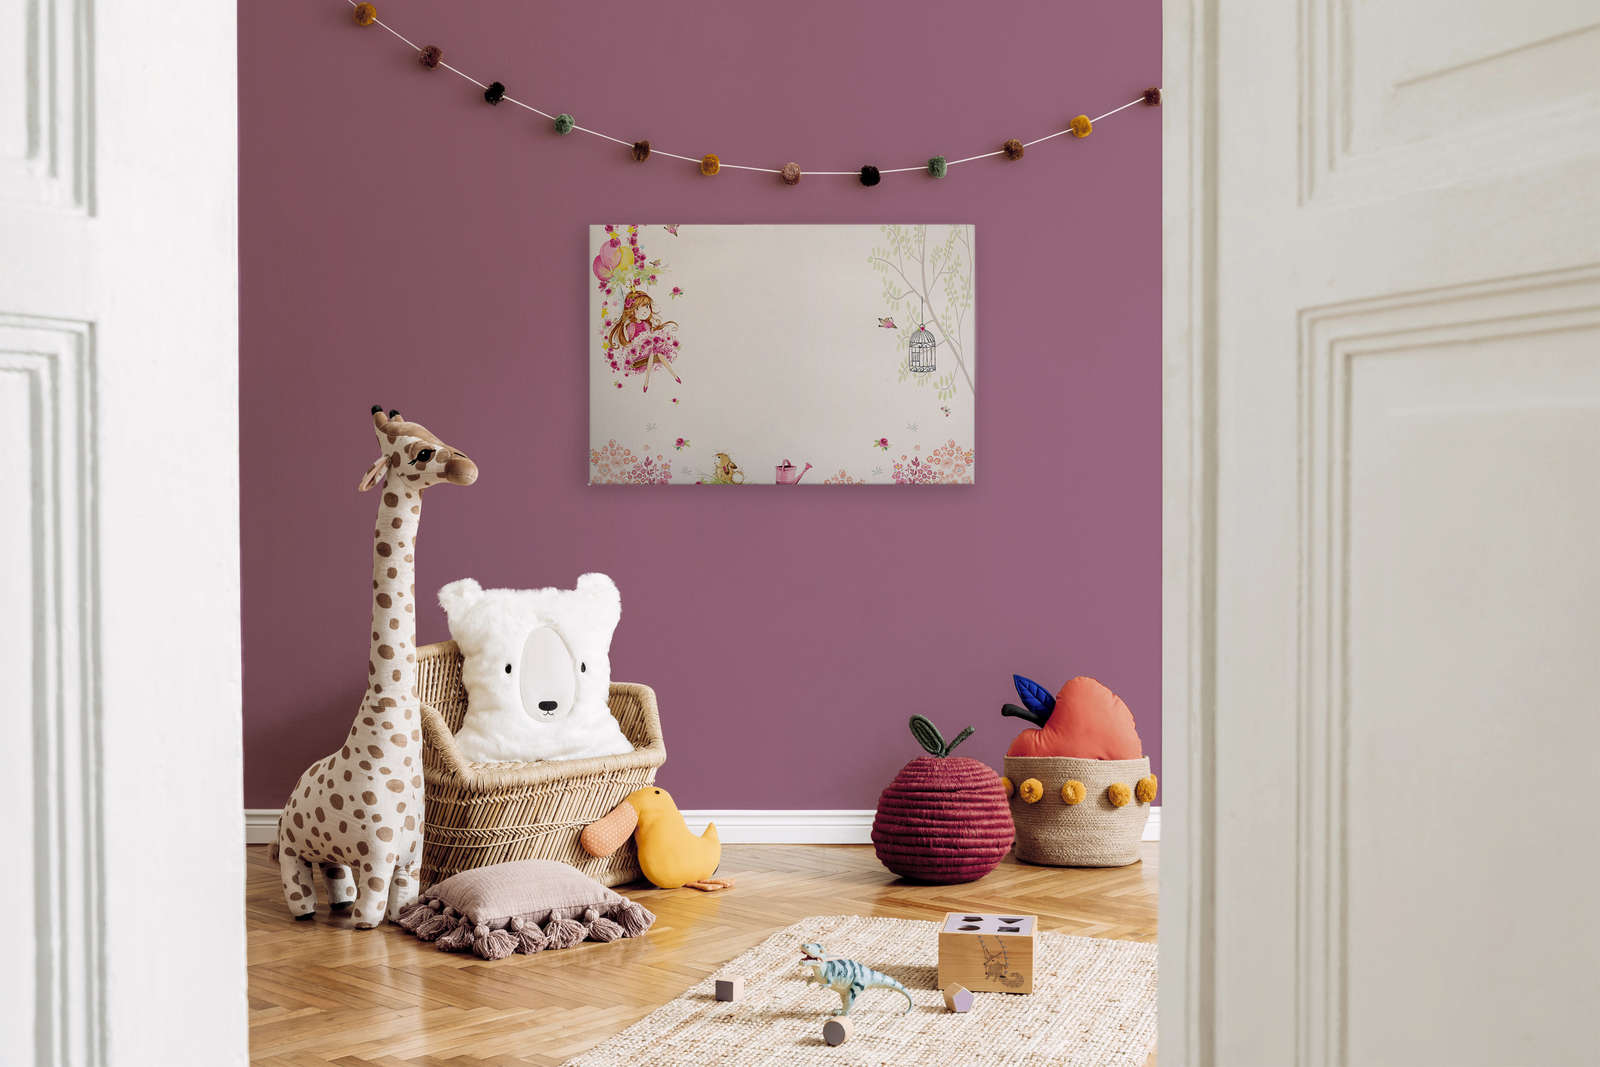             Leinwandbild Kinderzimmer mit Prinzessin auf Schaukel und Tieren – 0,90 m x 0,60 m
        